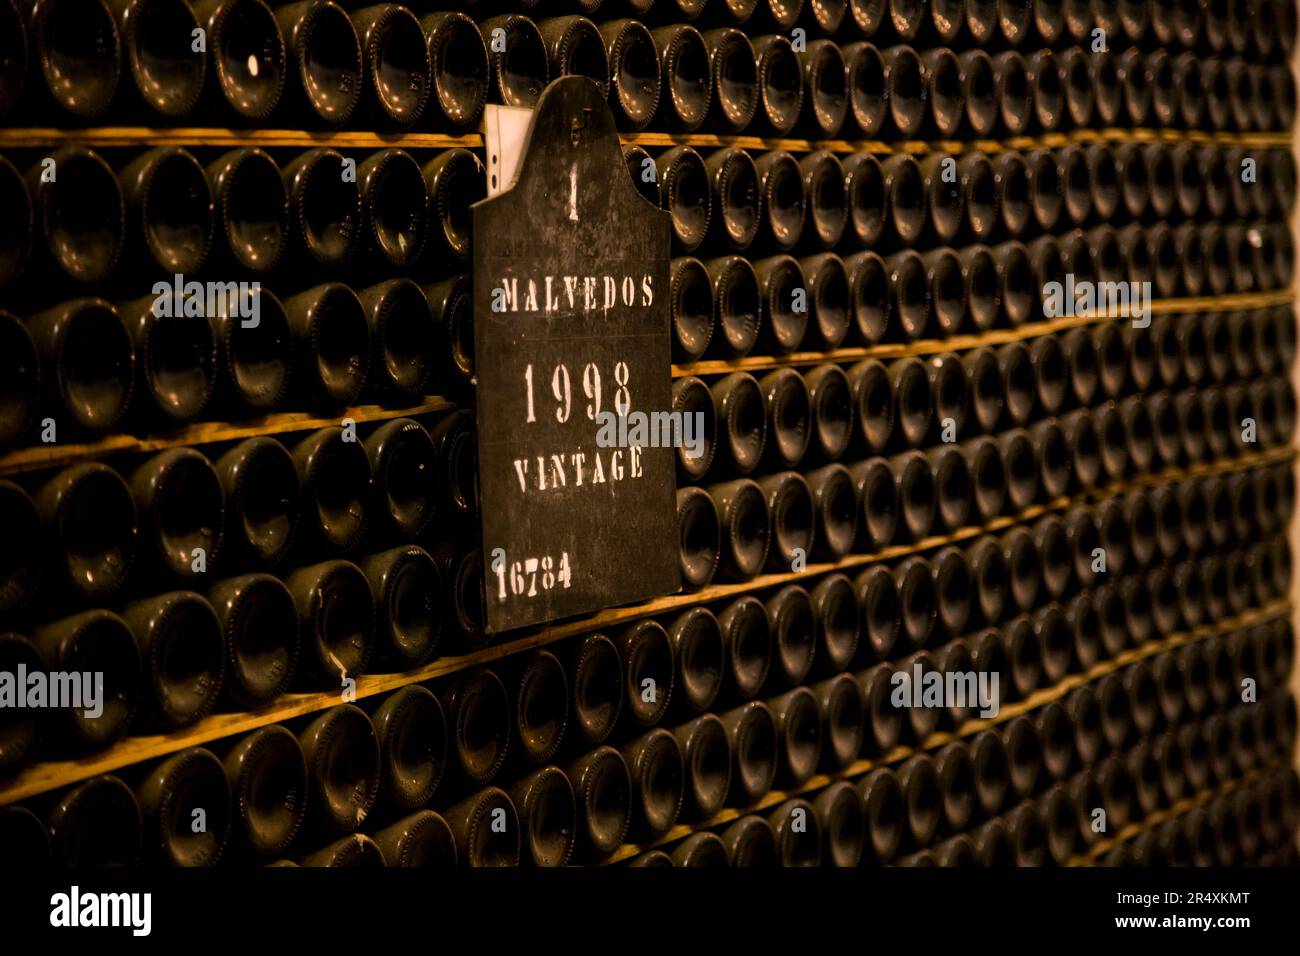 Bottiglie di vino Porto d'annata 1998 a Porto, Portogallo; Porto, Portogallo Foto Stock